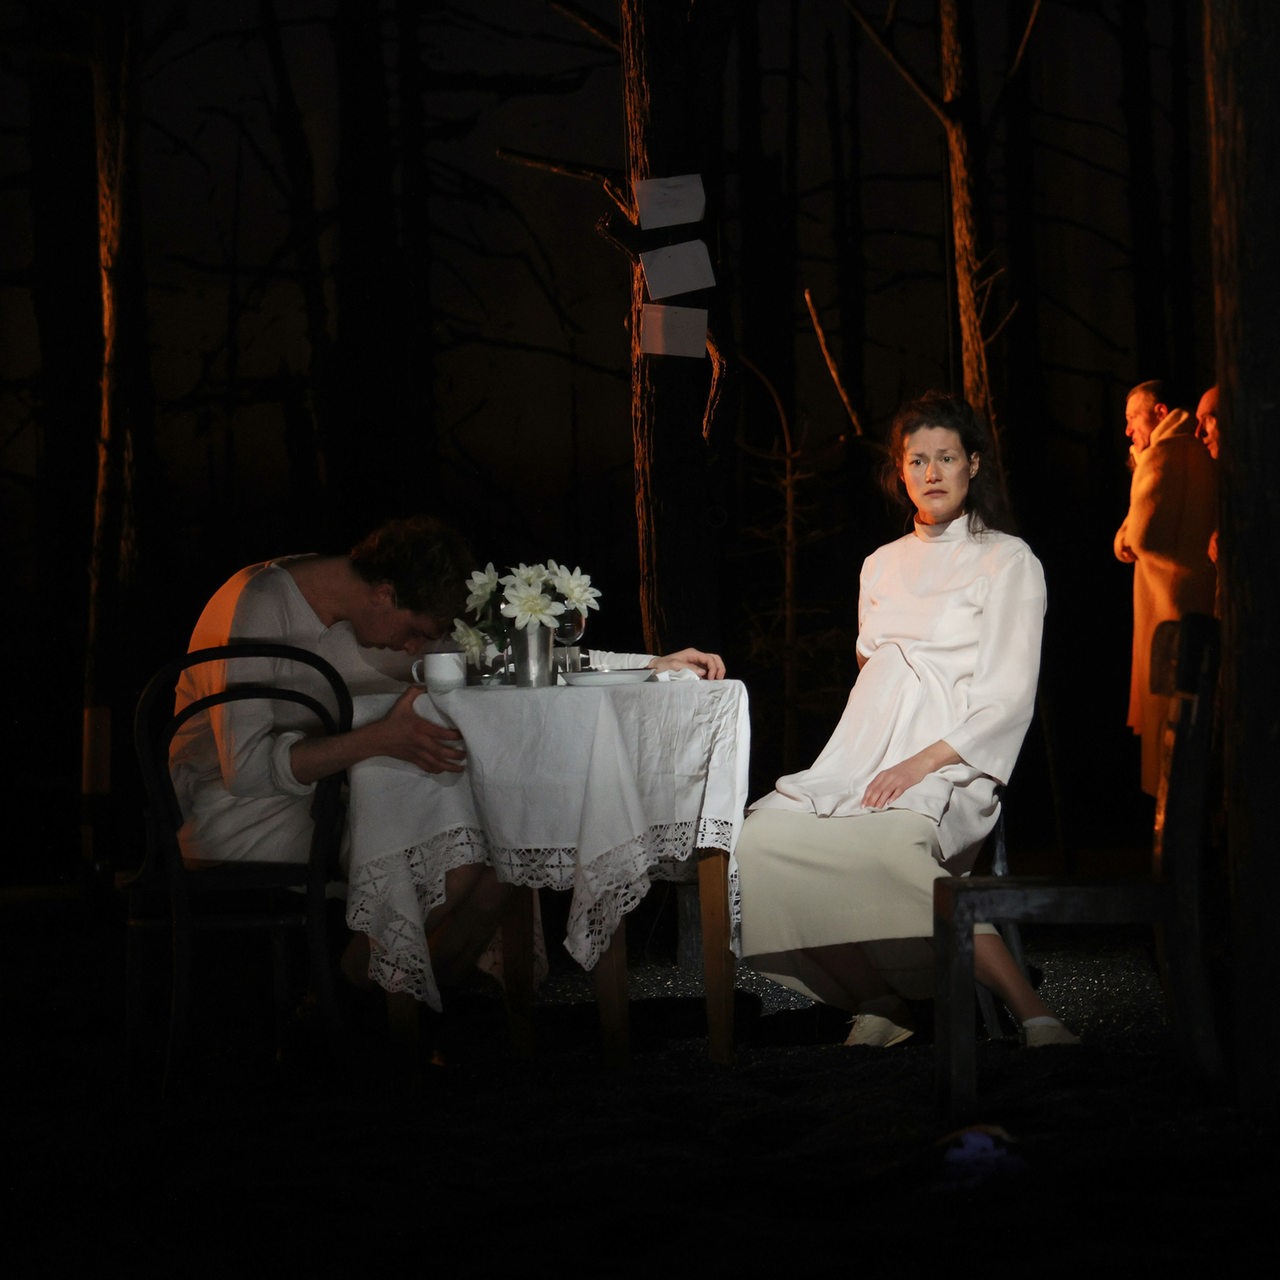 Szene aus "Erbarmen":  Ein Paar sitzt an einem gedeckten Tisch, im Hintergrund sieht man Menschen in einem Wald